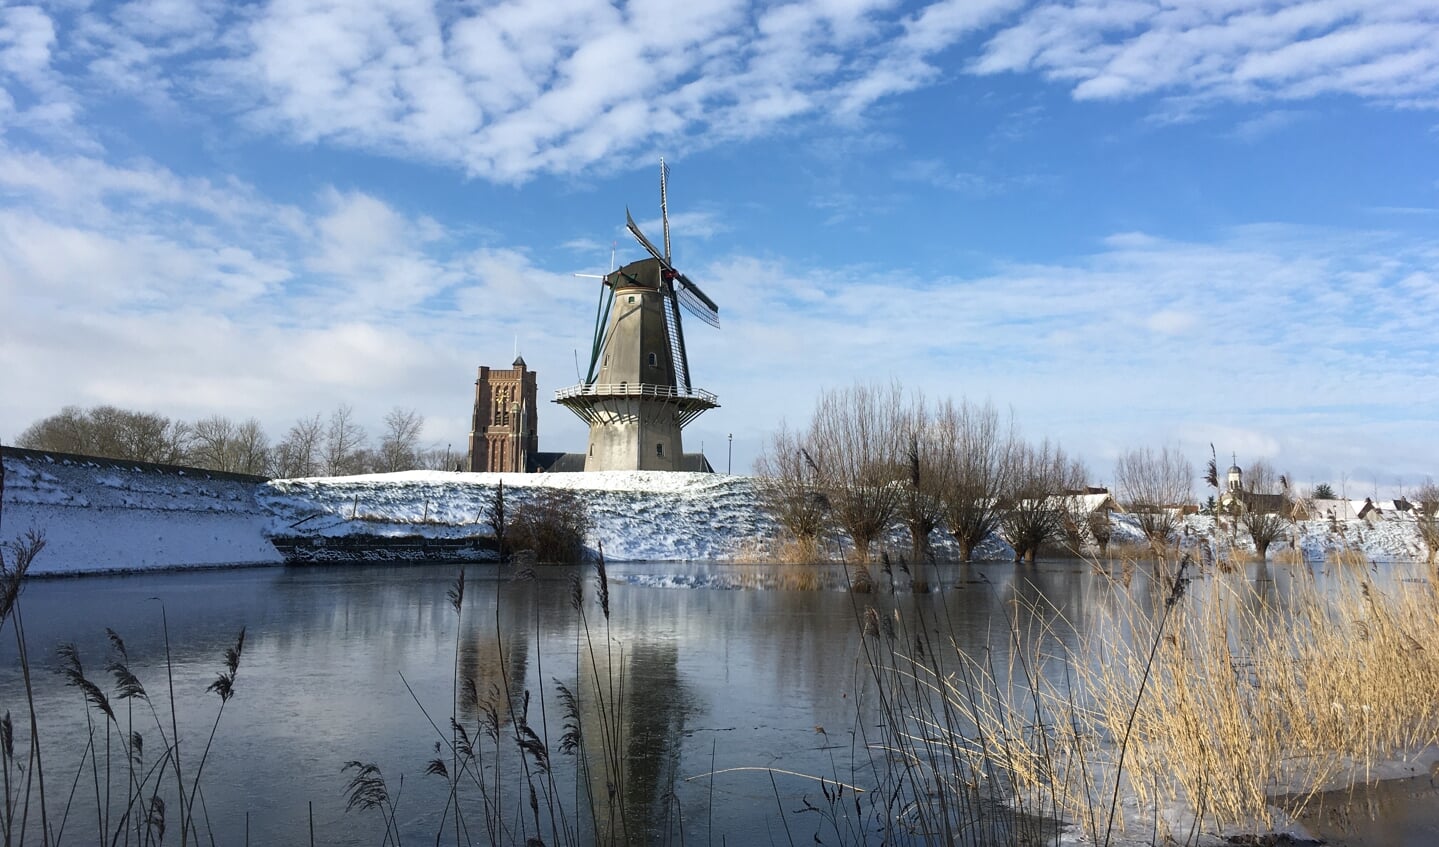 Een foto van de vesting in Woudrichem bedekt met sneeuw, schrijft de 13-jarige Thijs Bok bij deze foto.